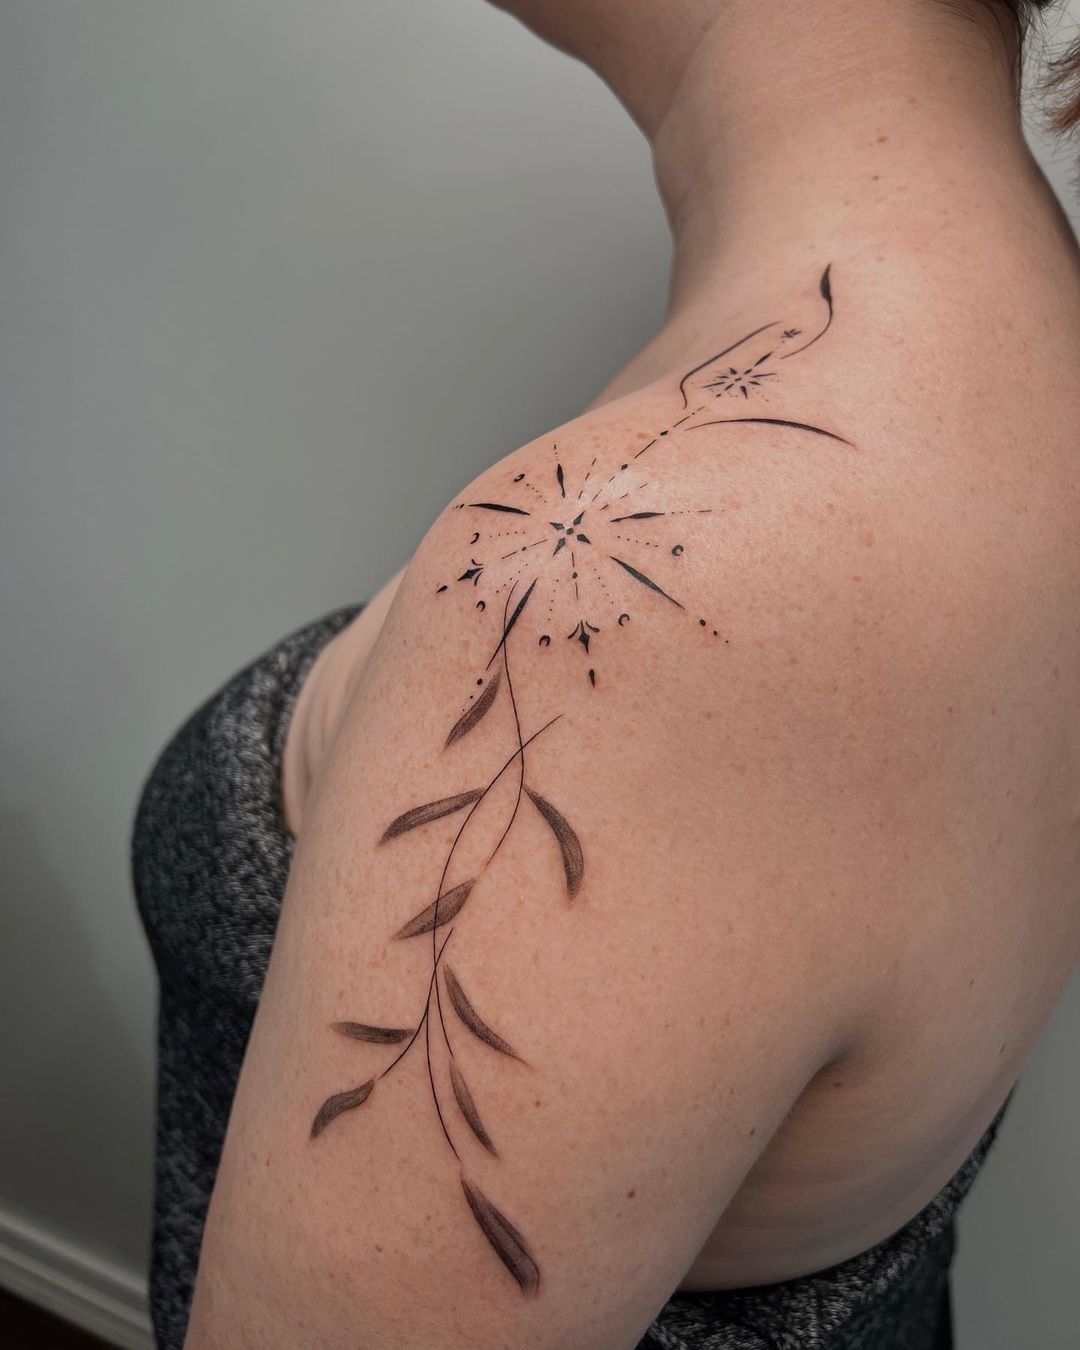 Flower tattoo on shoulder by ankh.jen